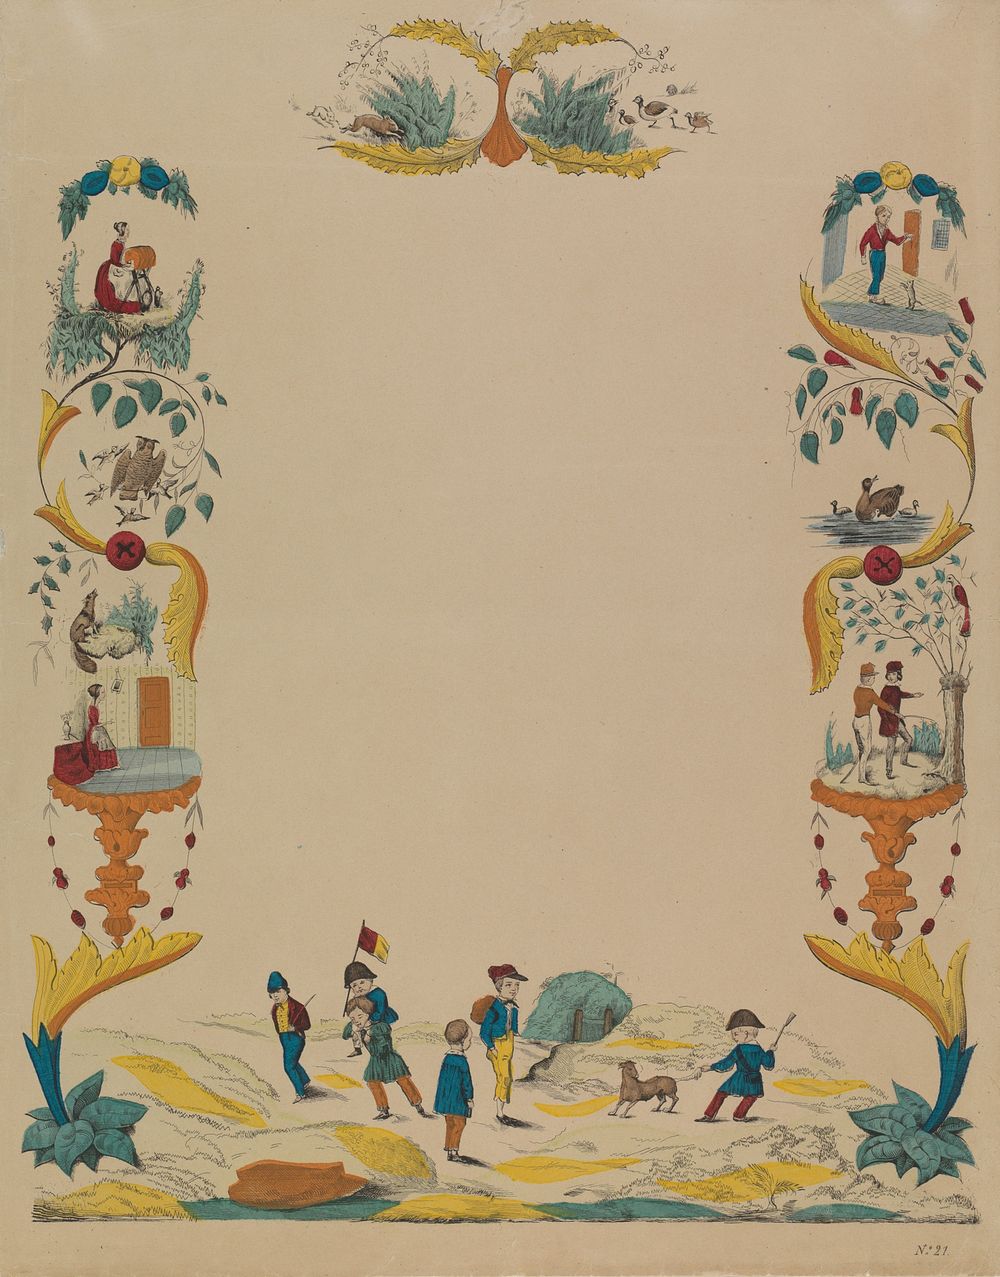 Wensbrief met verschillende dieren en figuren (c. 1780 - c. 1899) by anonymous and anonymous